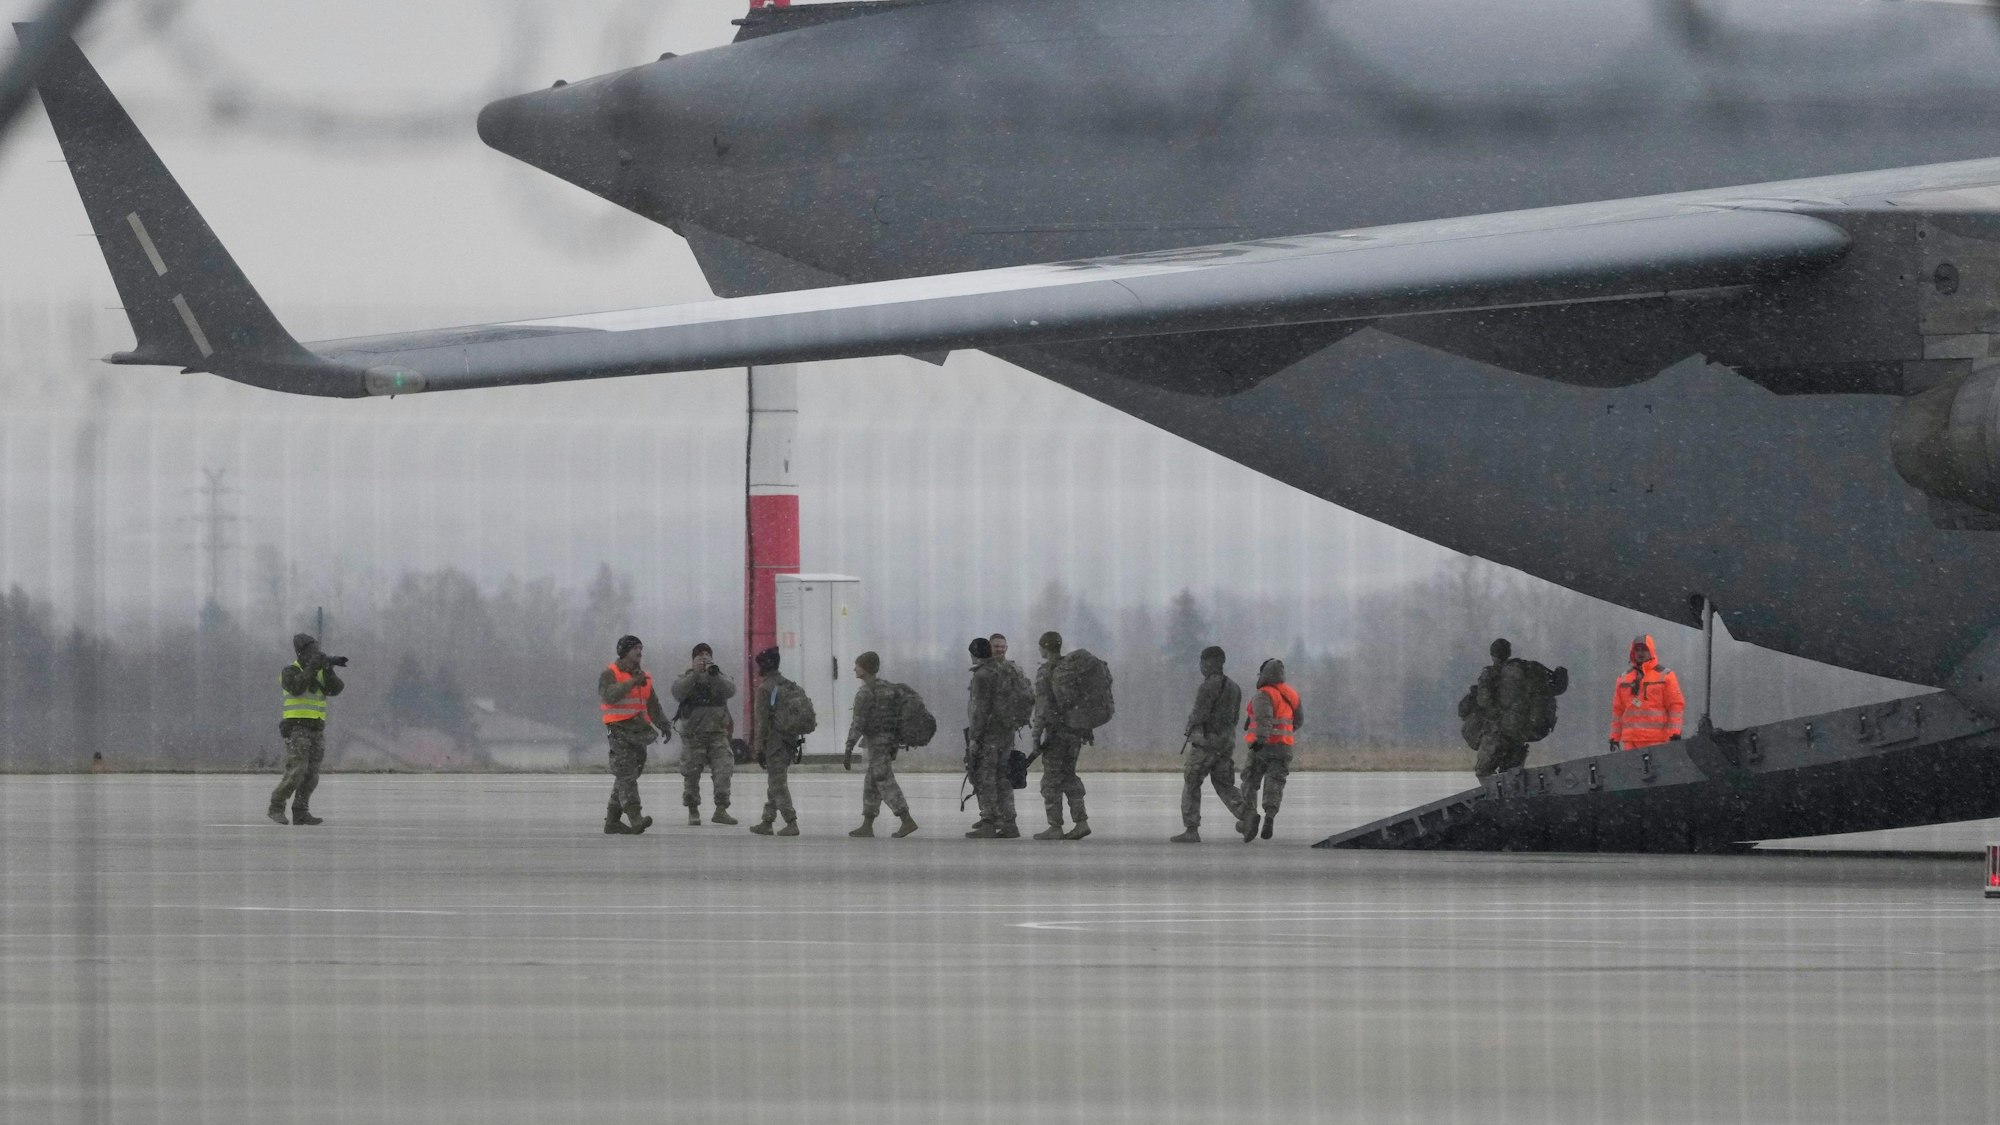 06.02.2022, Polen, Rzeszow Jasionka: Truppen der 82. Luftlandedivision der US-Armee entladen Fahrzeuge aus einem Transportflugzeug, nachdem sie von Fort Bragg auf dem Flughafen Rzeszow-Jasionka im Südosten Polens angekommen sind.